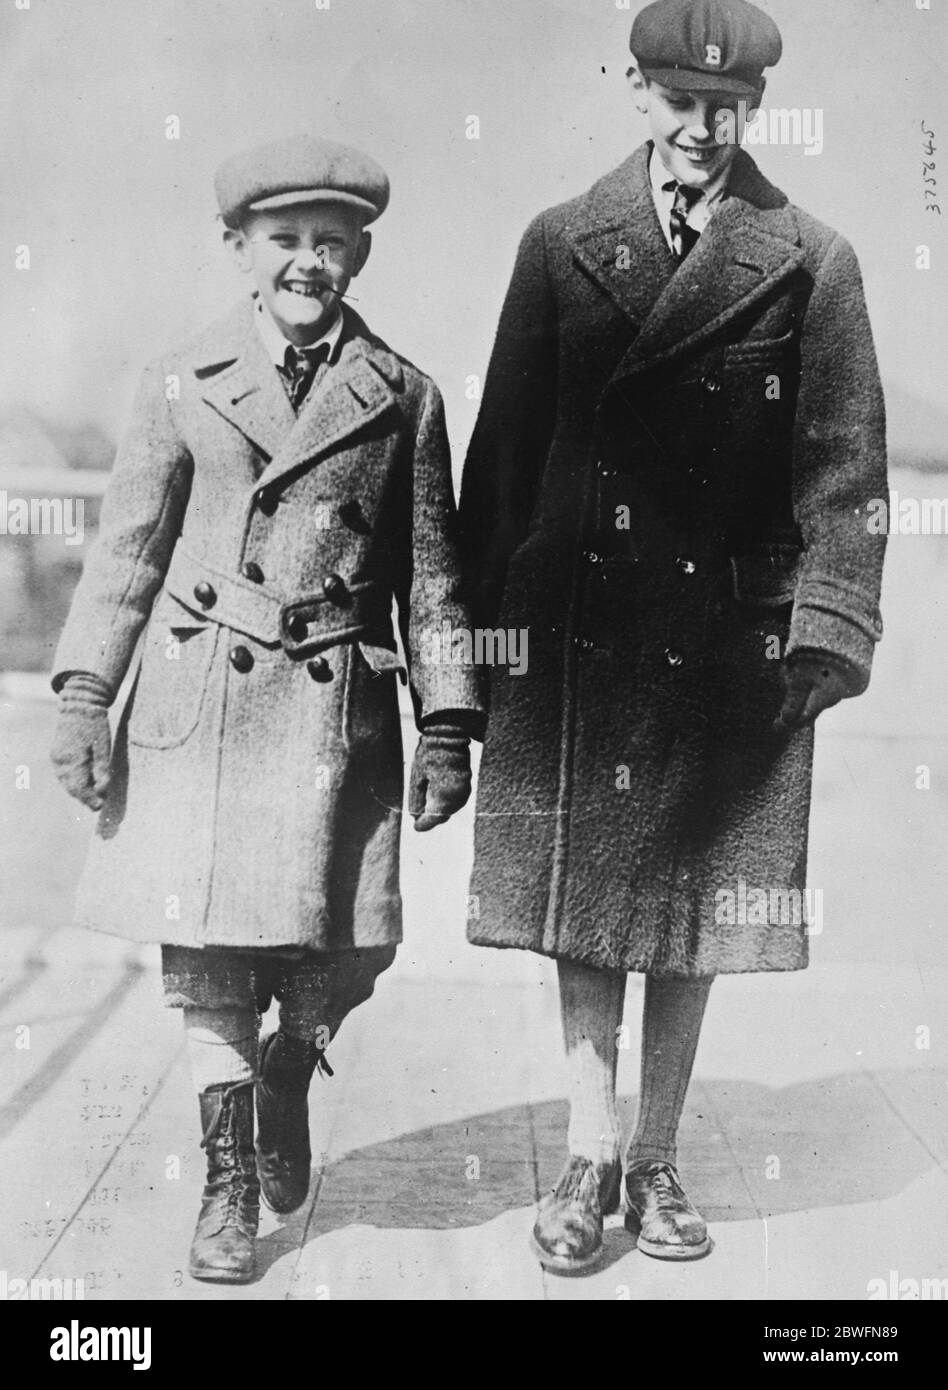 Reichster Junge krank . John Jacob Astor, der 13-jährige Sohn des verstorbenen Col Jacob Astor, ist in Paris an Typhus erkrankt. Er ist einer der reichsten Jungen der Welt. 26. September 1925 Stockfoto